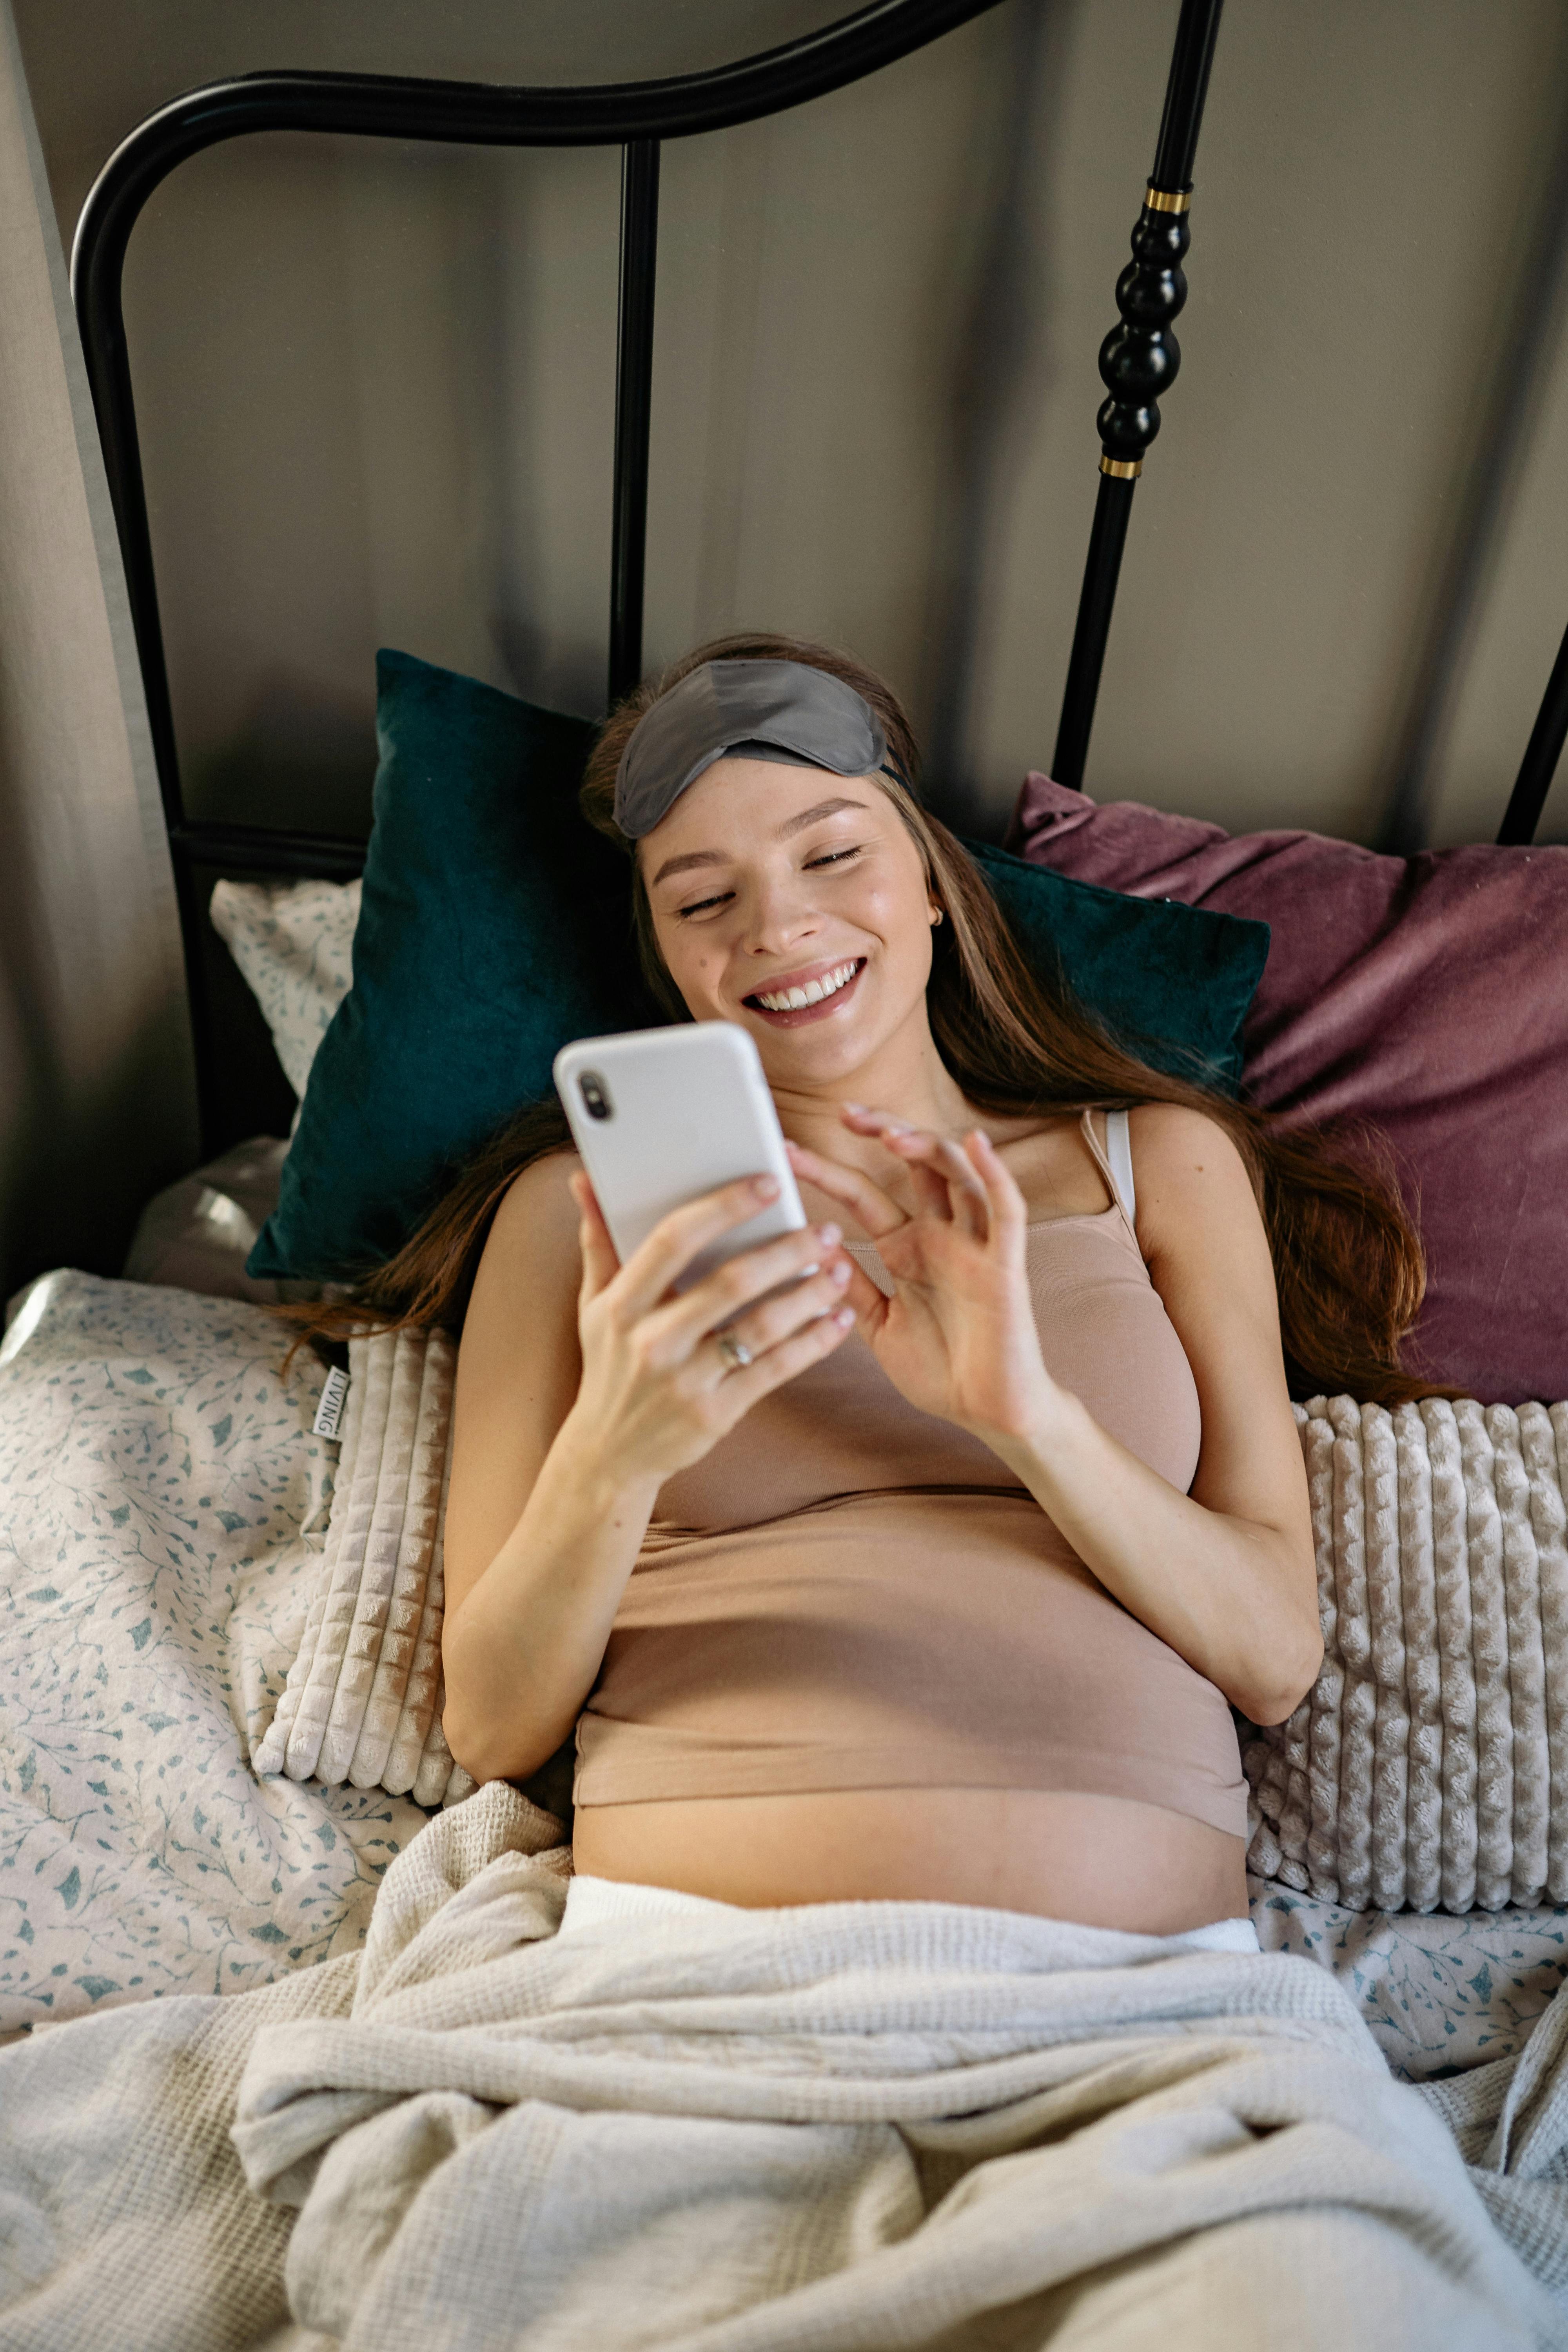 Una embarazada sonriente leyendo el móvil en la cama | Foto: Pexels